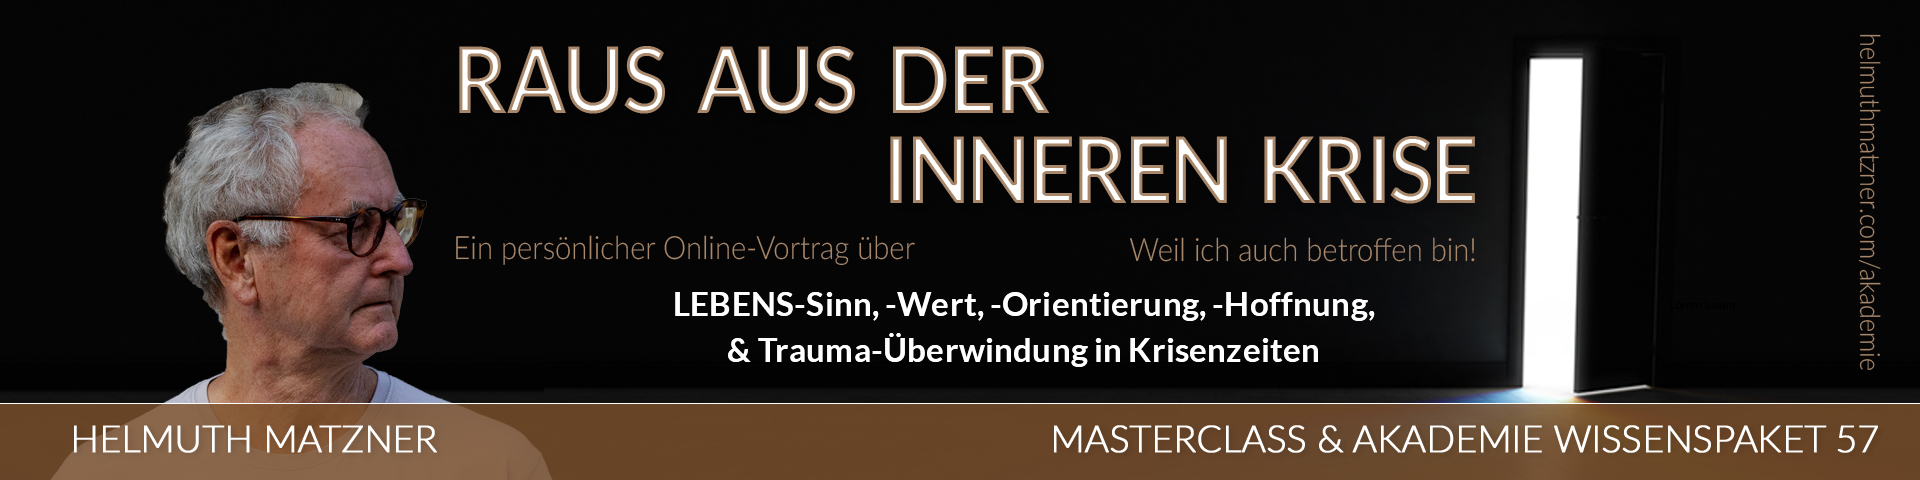 Helmuth Matzner - Masterclass & Akademie Wissenspaket 57 - Raus aus inneren Krise - LP-BANNER v03